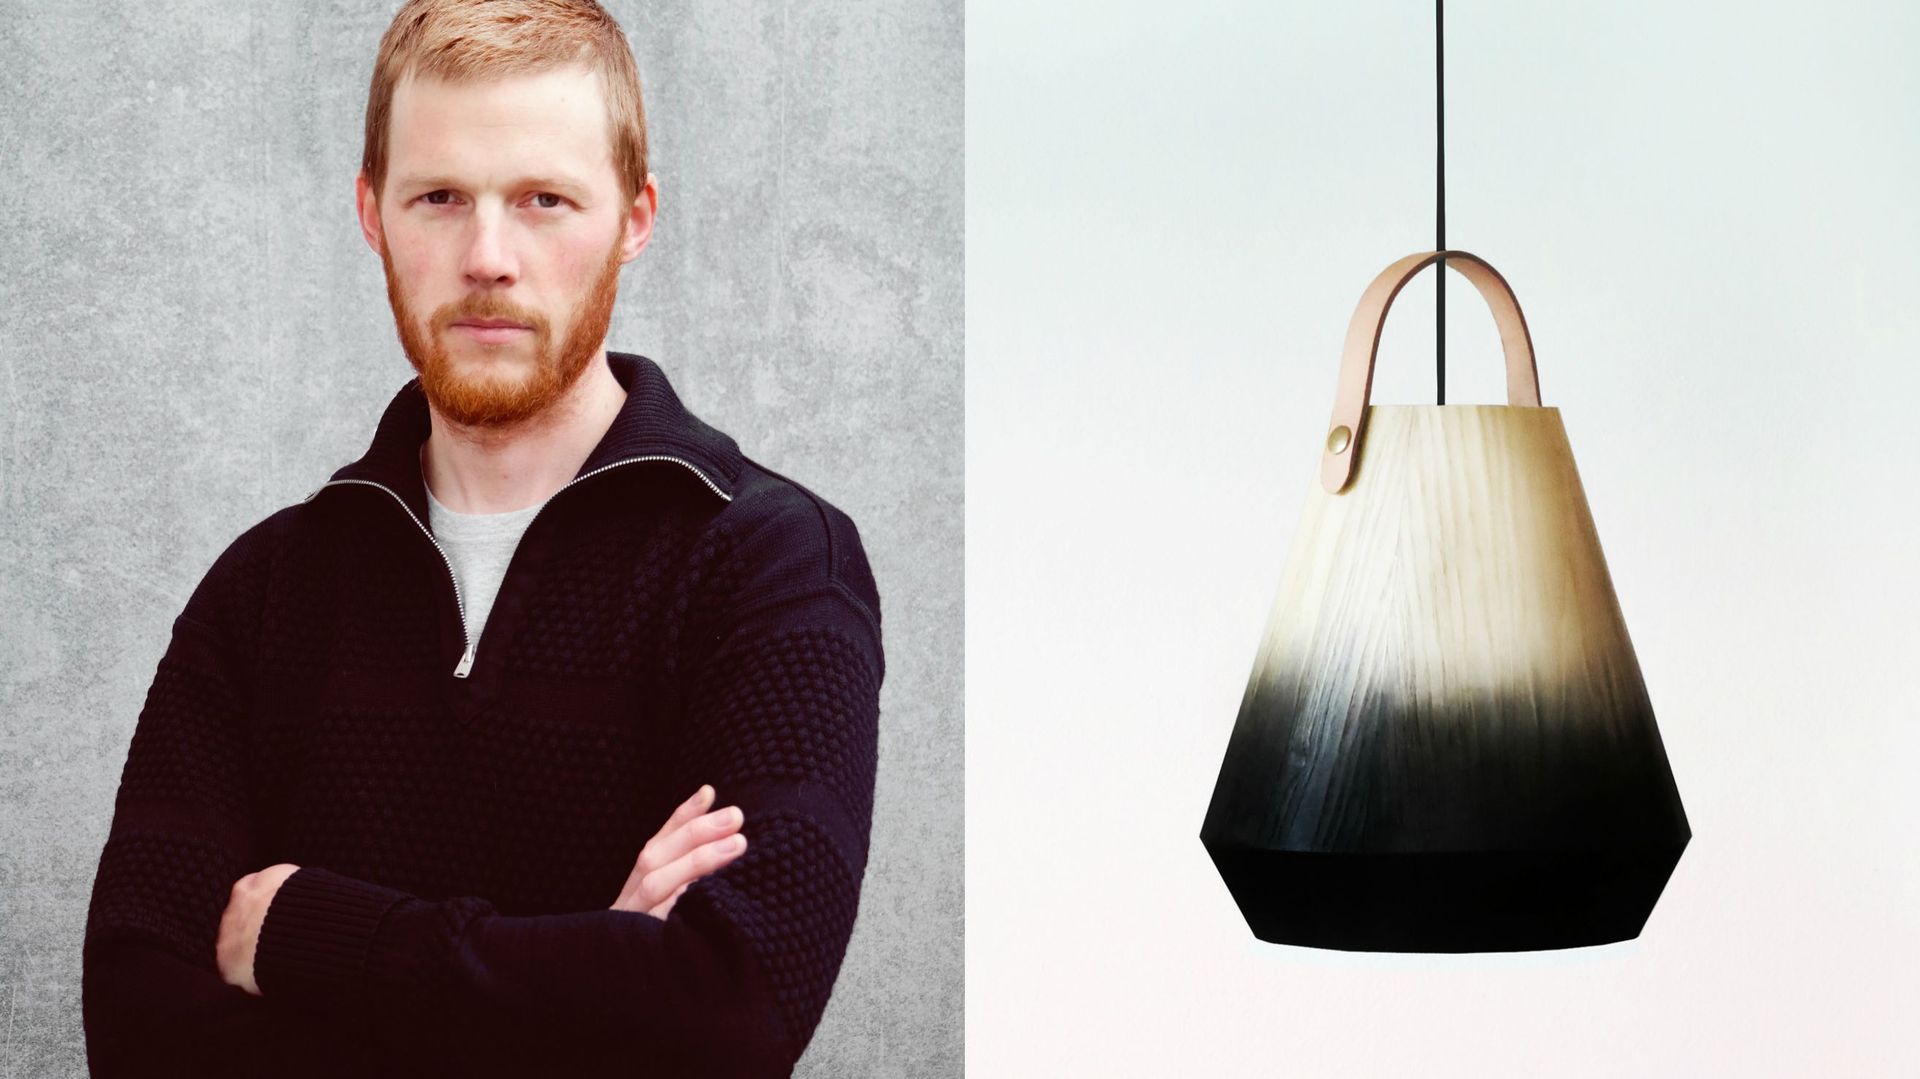 Lampe "Konkret" de Jonas Edvard, designer sélectionné pour les Talents à la Carte de Maison & Objet janvier 2016